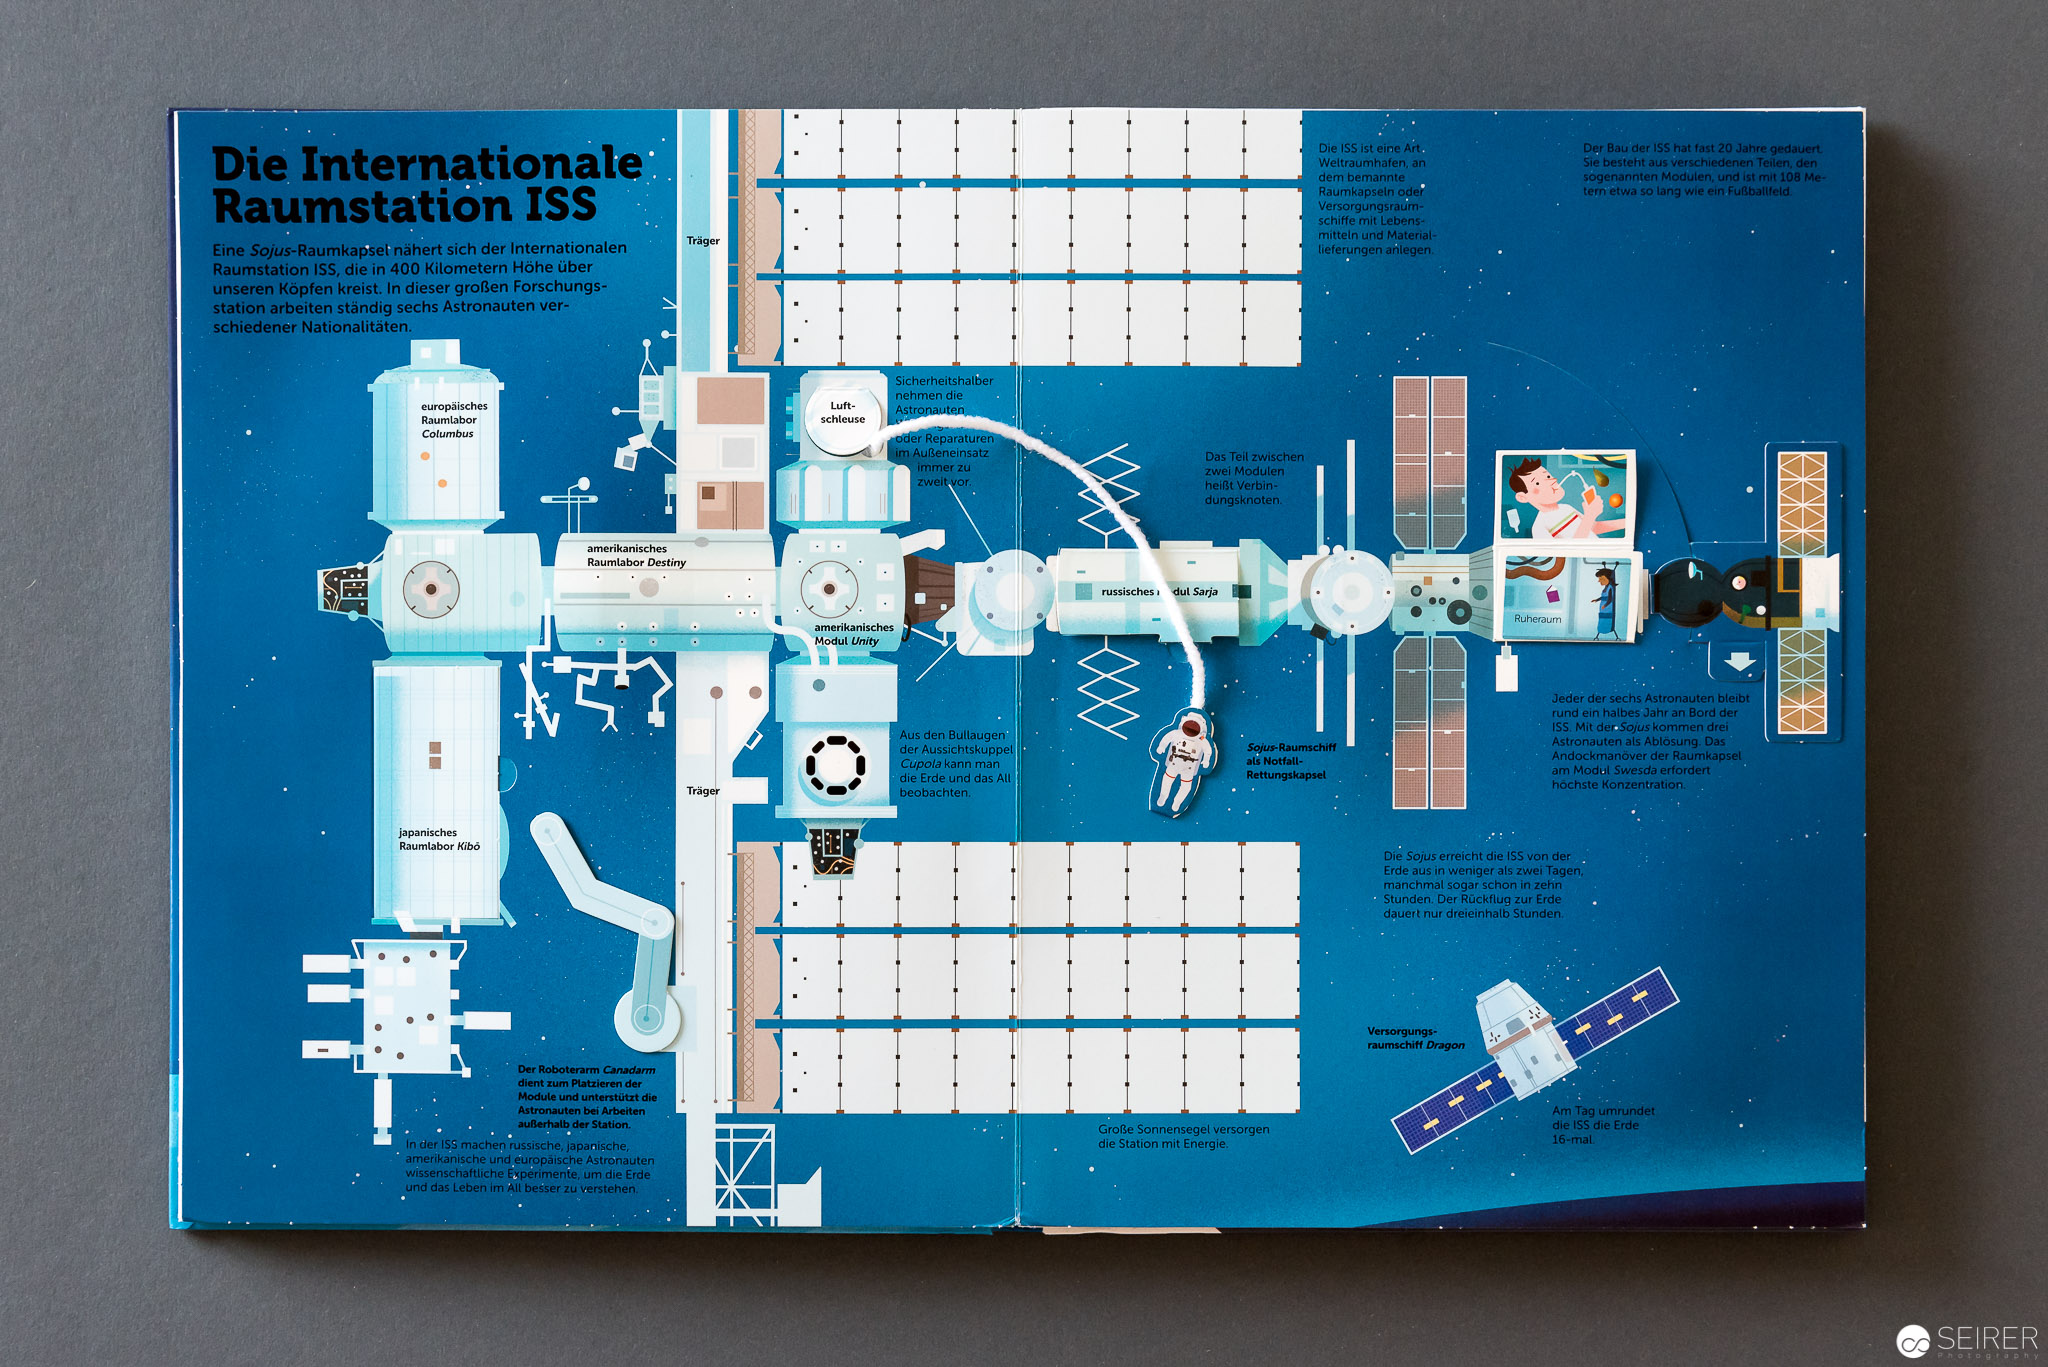 Mein großes Buch vom Weltall - Auf der ISS